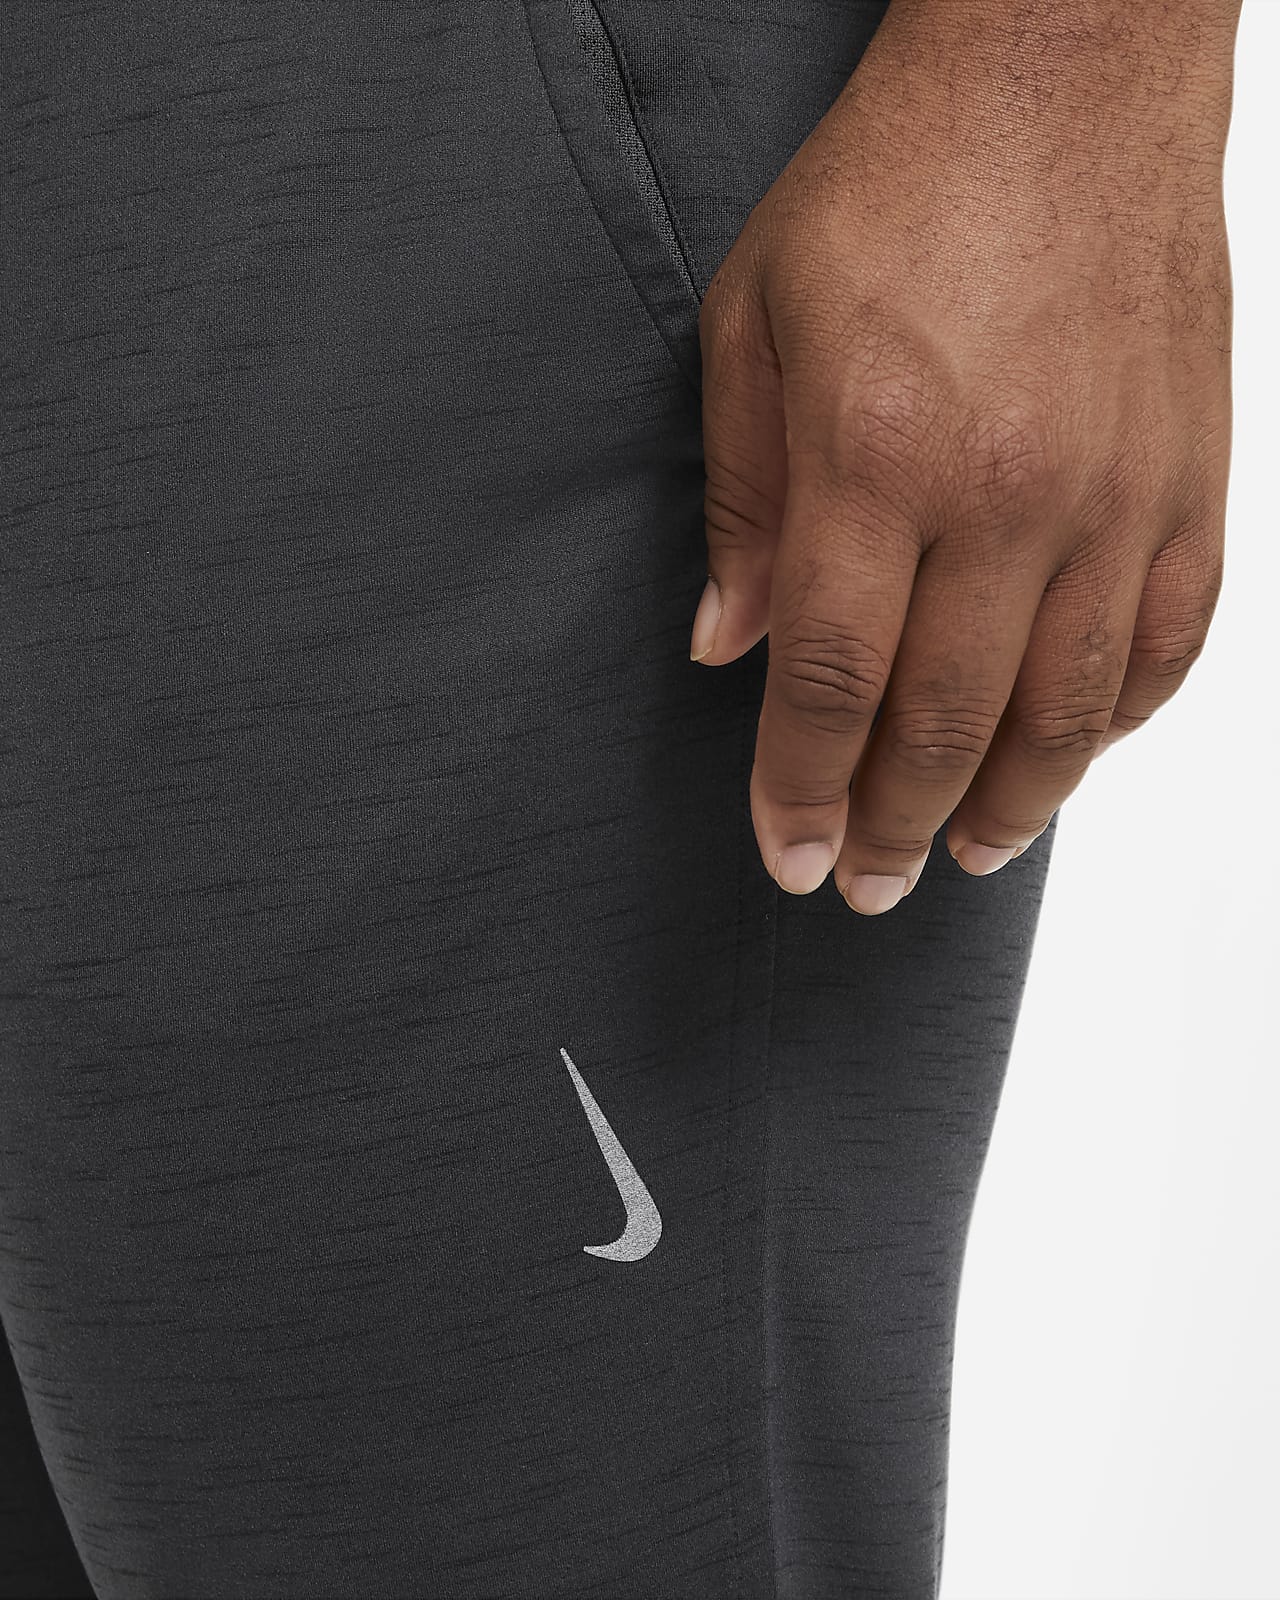 Pantalon Nike Yoga Dri-FIT pour Homme. Nike FR